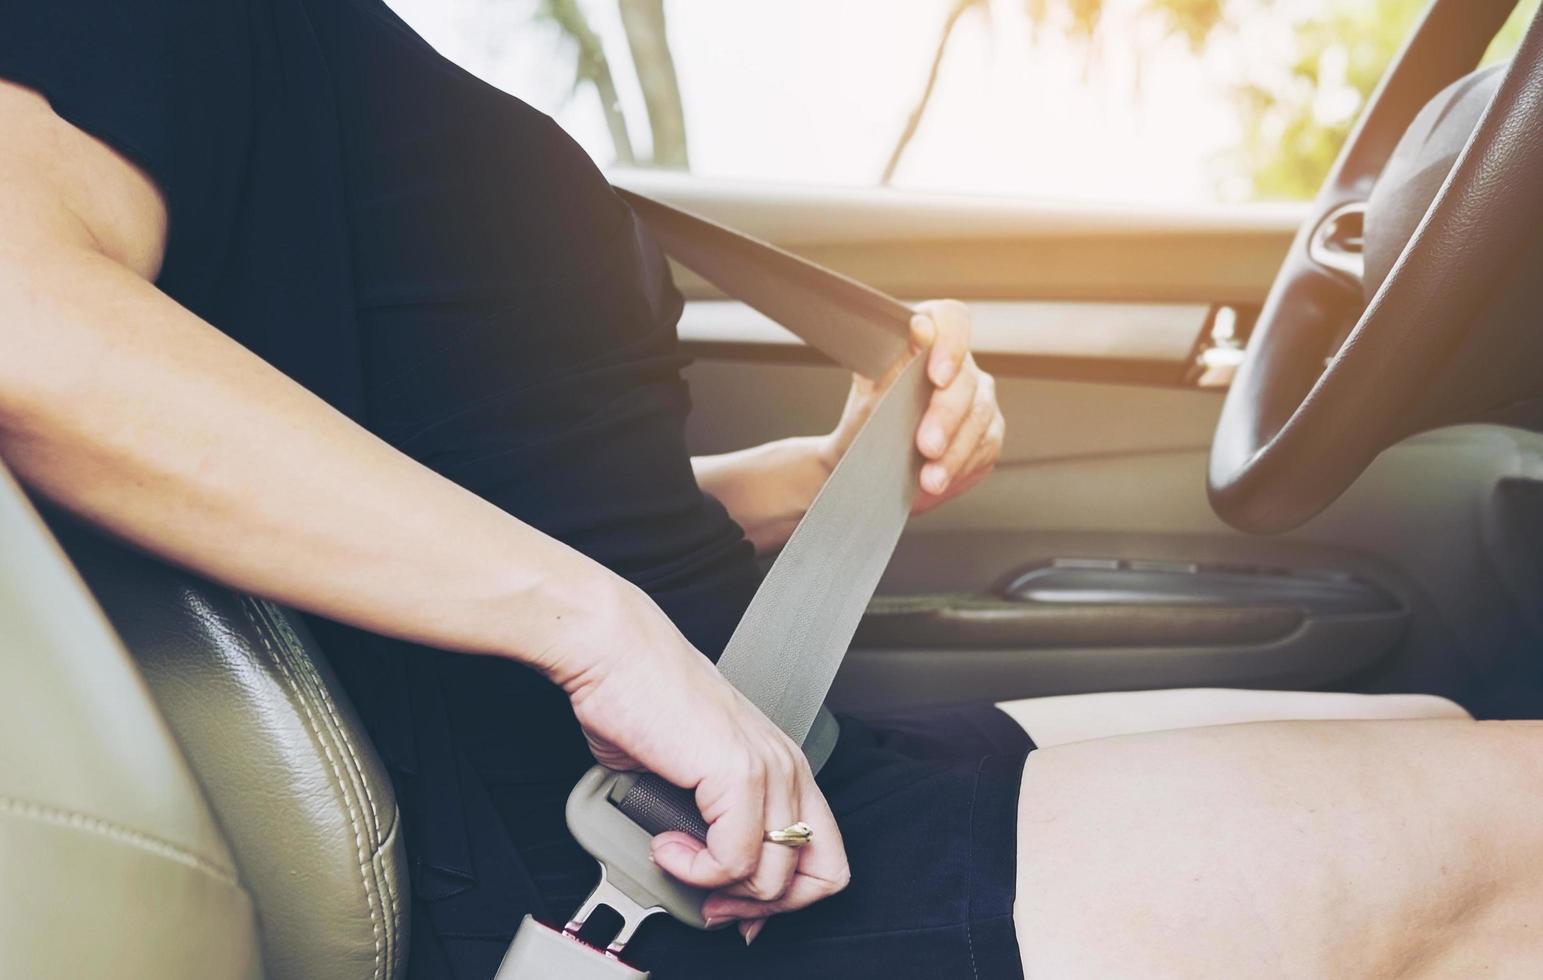 senhora colocando o cinto de segurança do carro antes de dirigir, feche a fivela do cinto, conceito de acionamento seguro foto